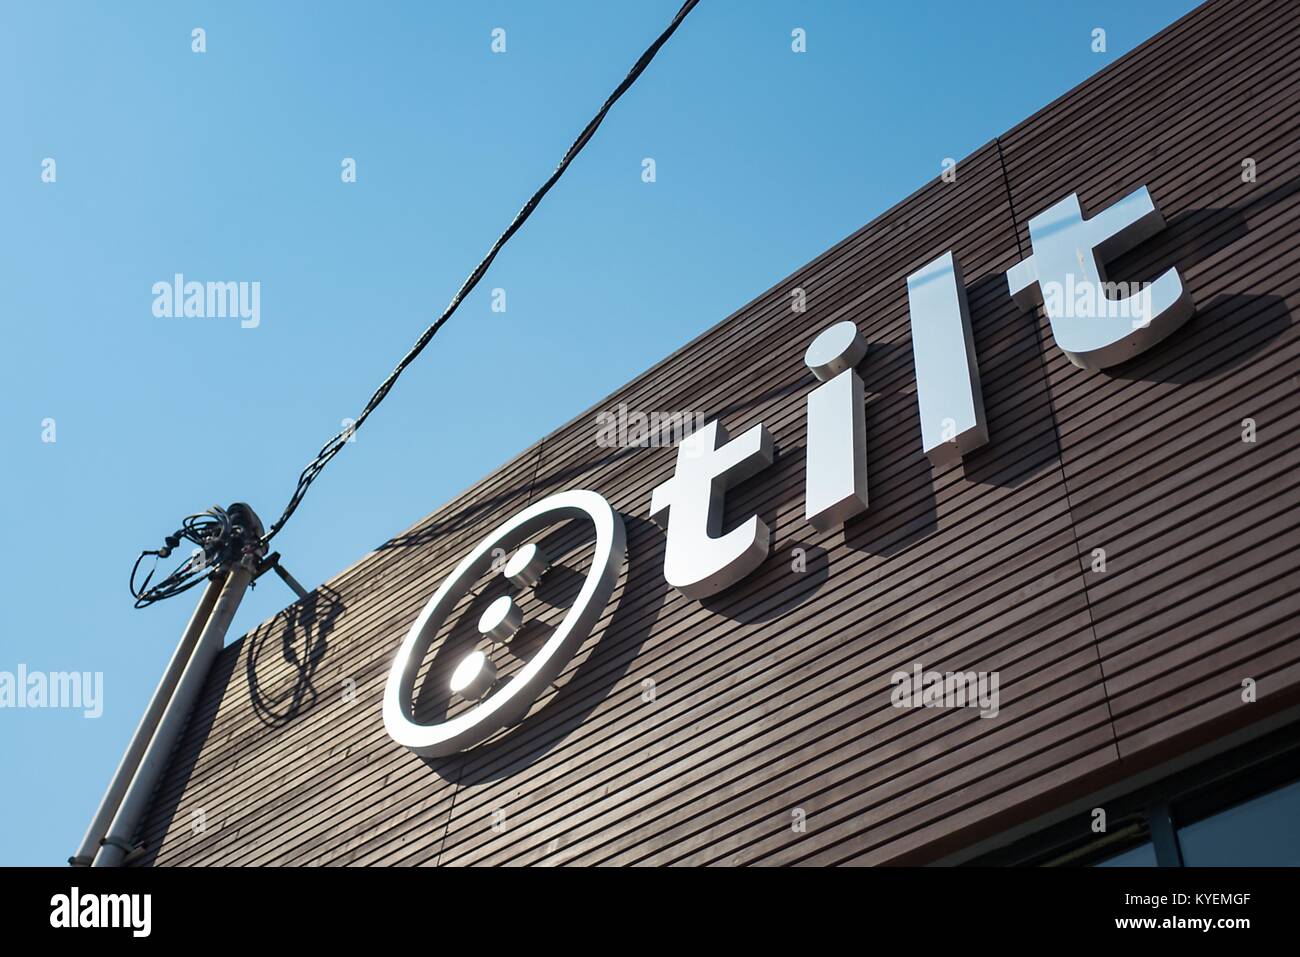 Ancien siège social de démarrage financement Tilt, acquis par Airbnb en 2017, dans le sud de Market (SoMa) quartier de San Francisco, Californie, 13 octobre 2017. SoMa est connu pour avoir la plus forte concentration d'entreprises technologiques et d'entreprises d'une région à l'échelle mondiale. () Banque D'Images